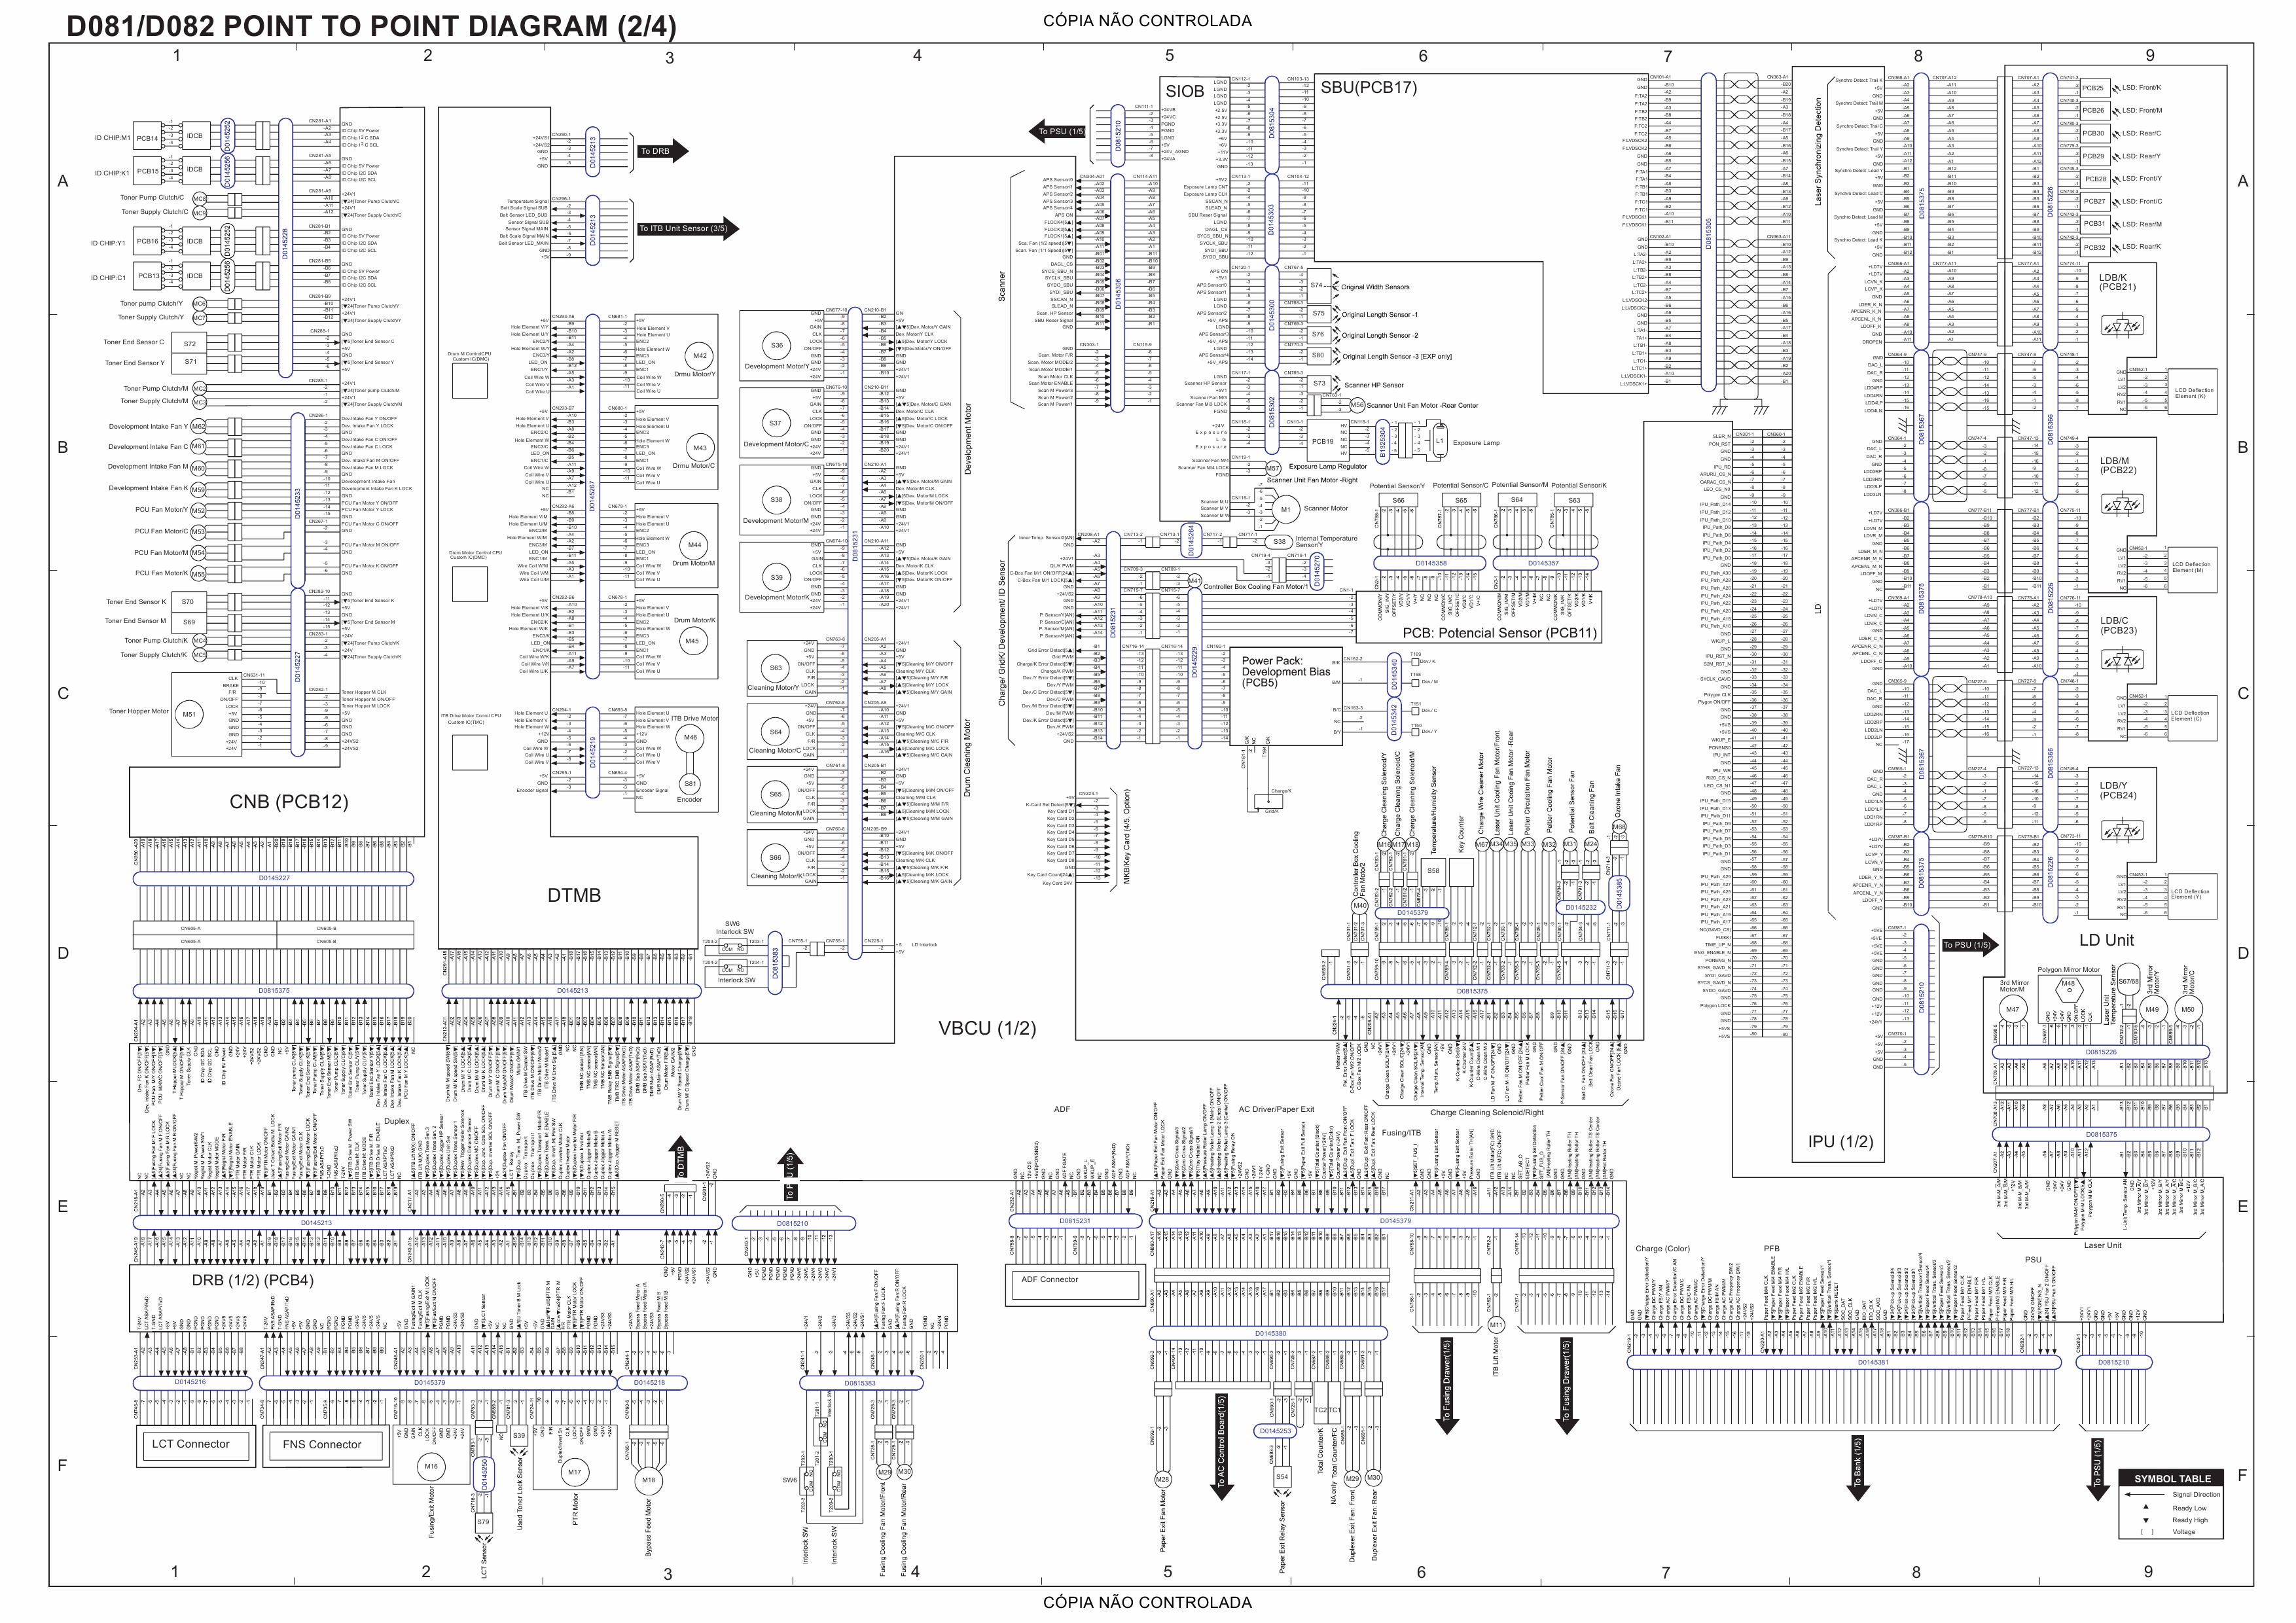 RICOH Aficio MP-C6501SP C7501SP D081 D082 Circuit Diagram-2